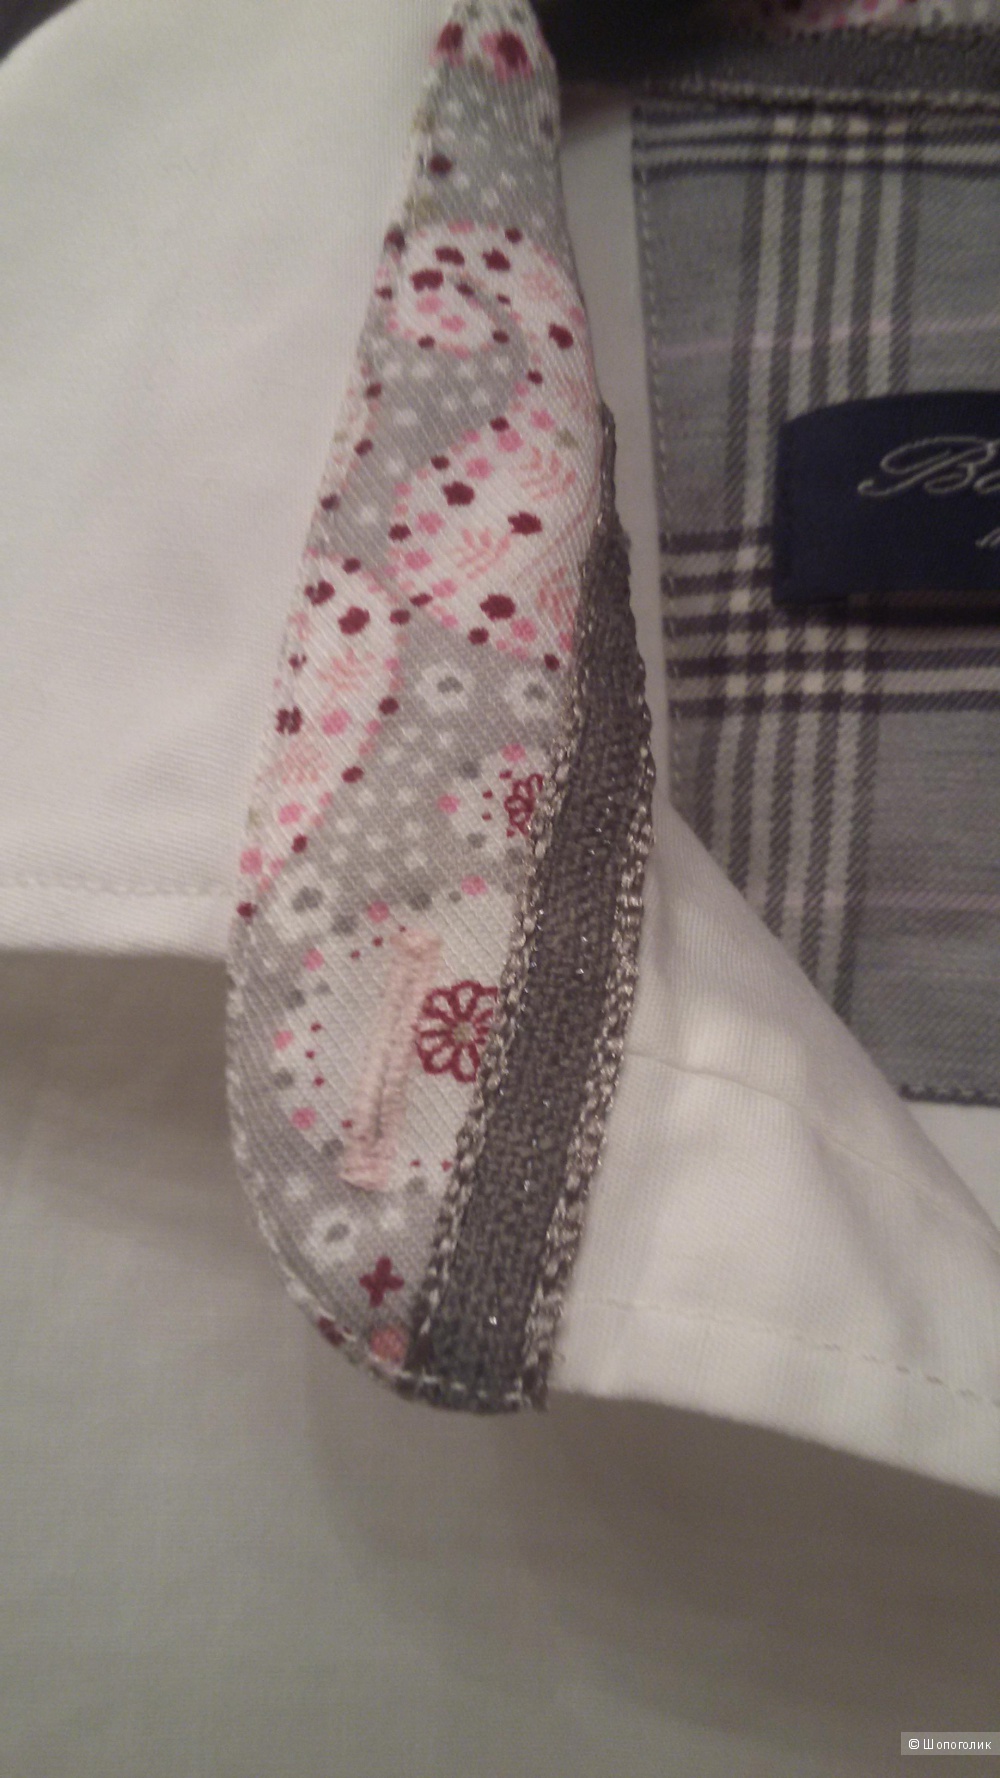 Оригинальная белая рубашка марки BARILOCHE, размер  DE 36